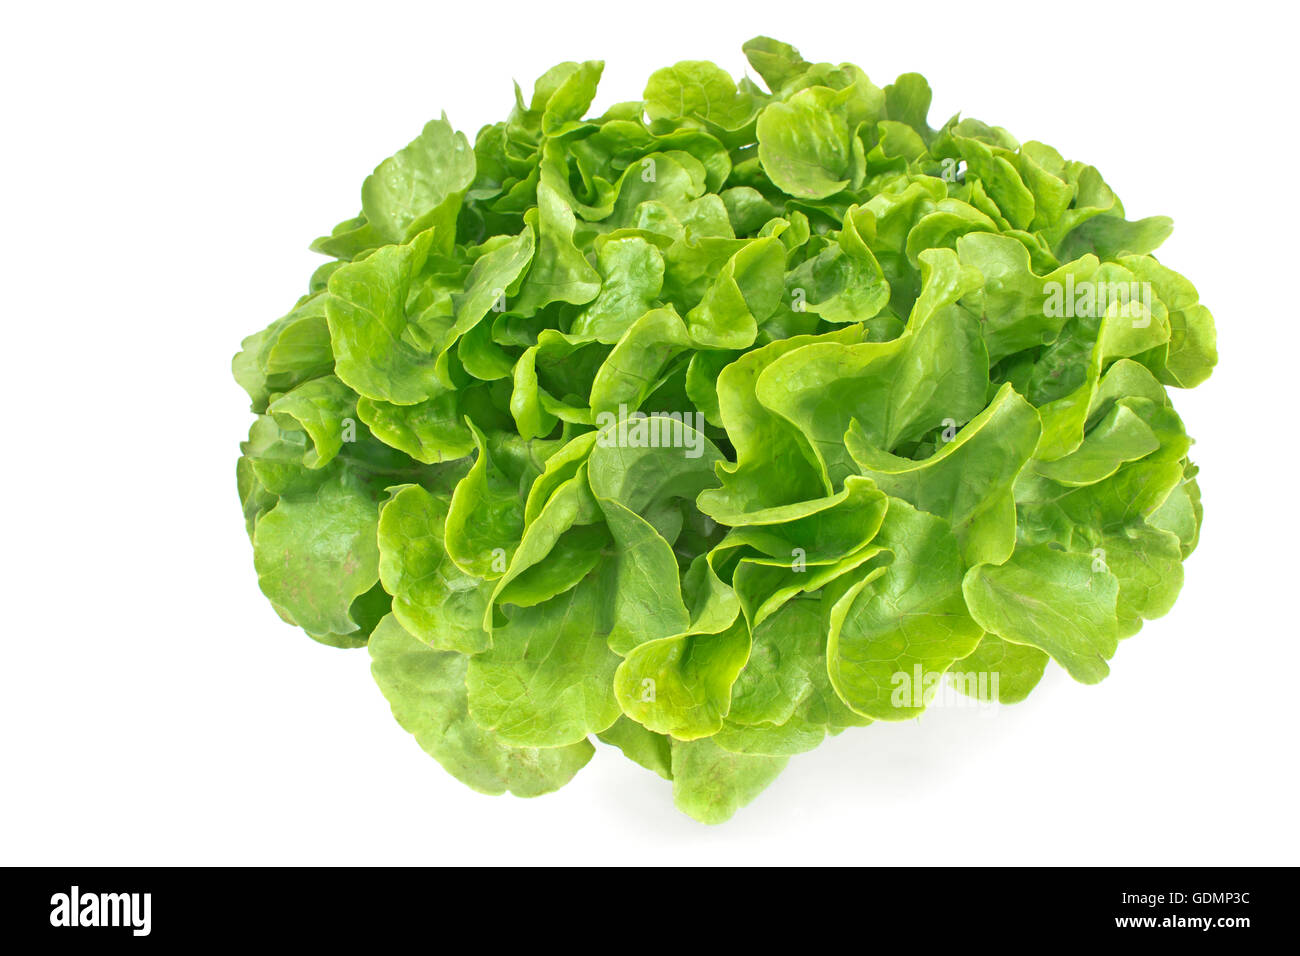 Fresh oak leaf lettuce isolated on white Stock Photo